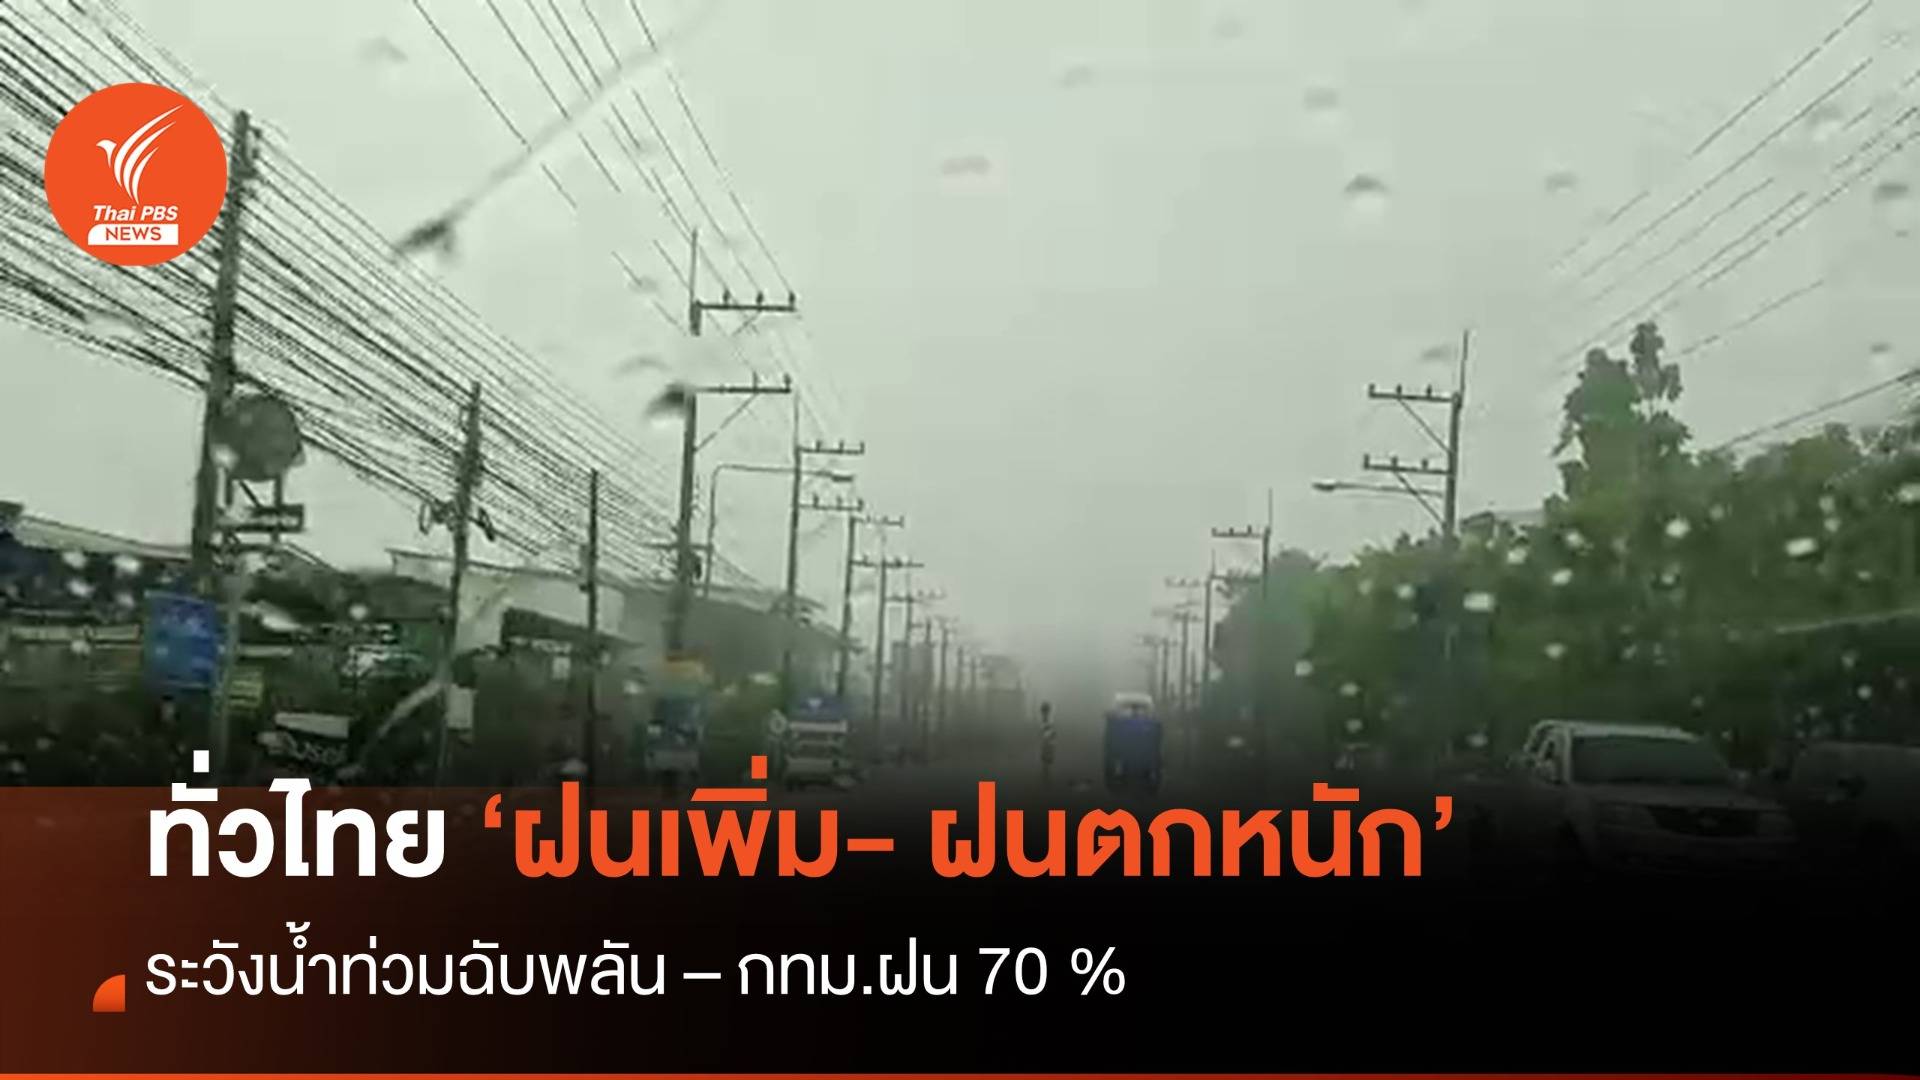 สภาพอากาศวันนี้ ทั่วไทยฝนตกหนัก  - ระวังน้ำท่วมฉับพลัน  